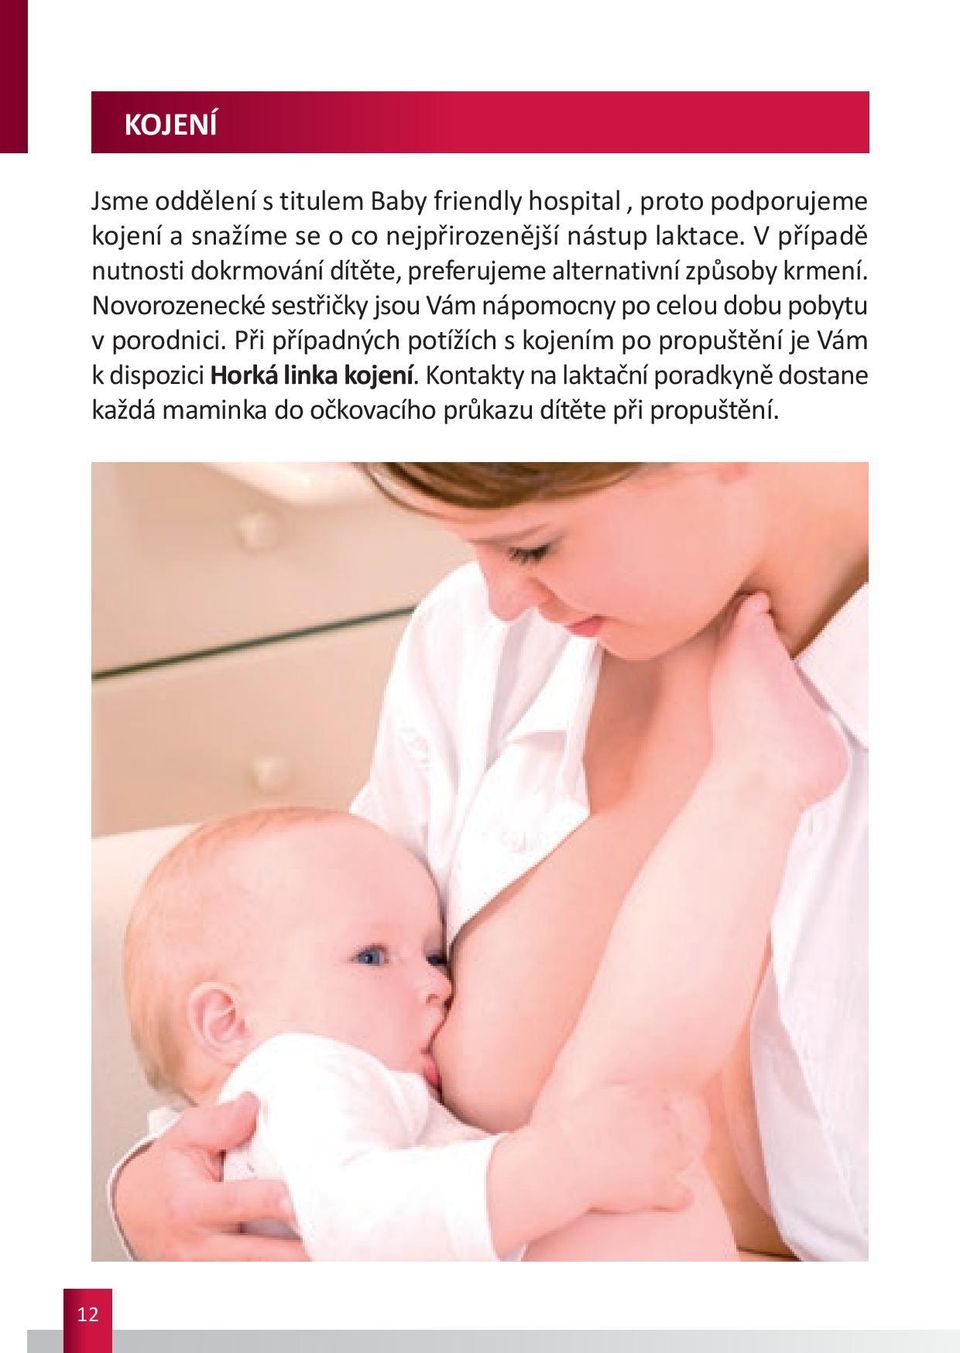 Novorozenecké sestřičky jsou Vám nápomocny po celou dobu pobytu v porodnici.